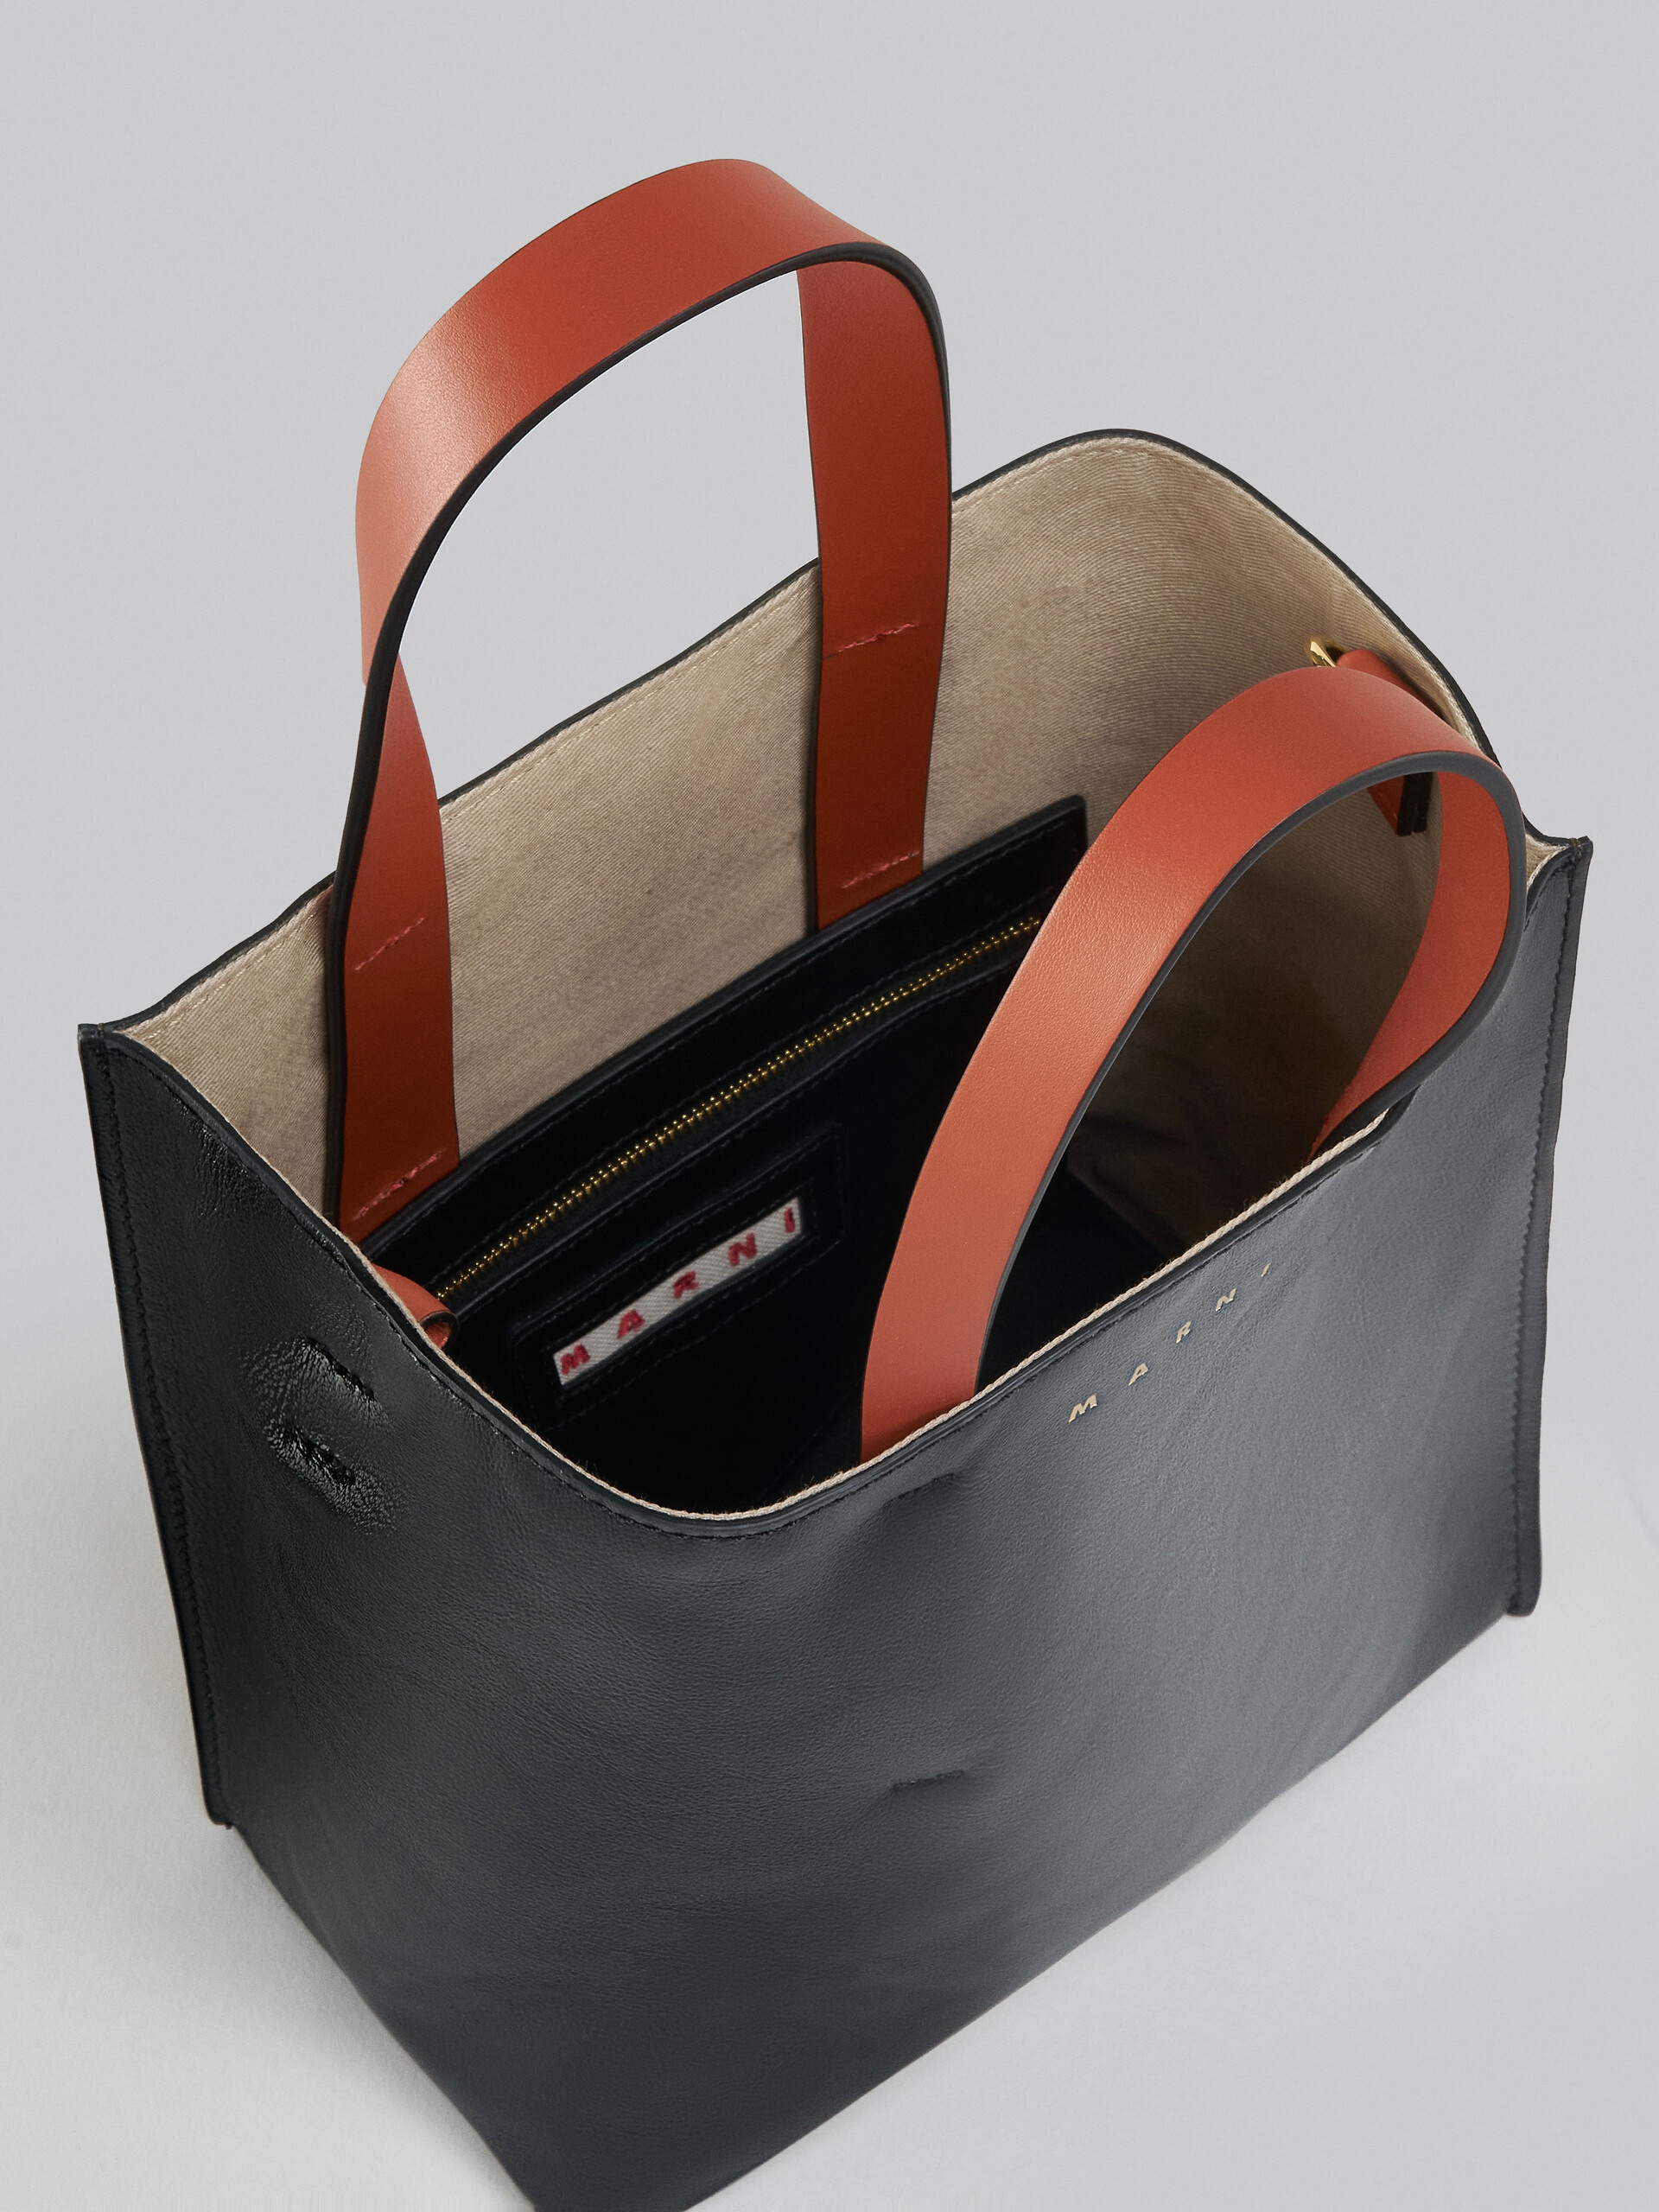 Mini-sac Museo Soft en cuir gris, noir et rouge - Sacs cabas - Image 4